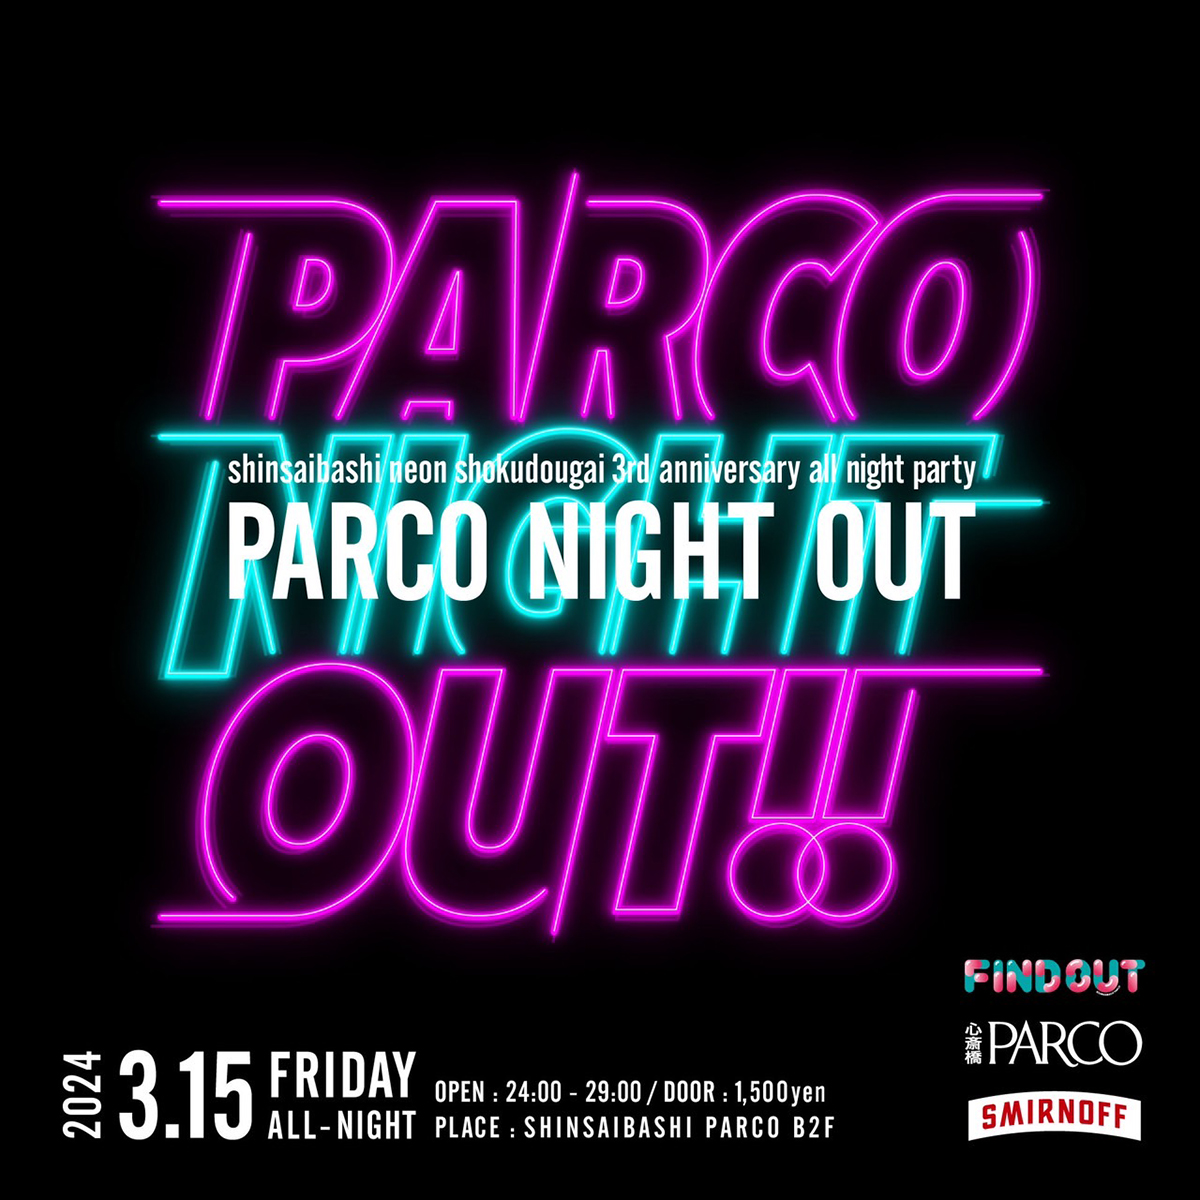 オールナイトイベント「PARCO NIGHT OUT」